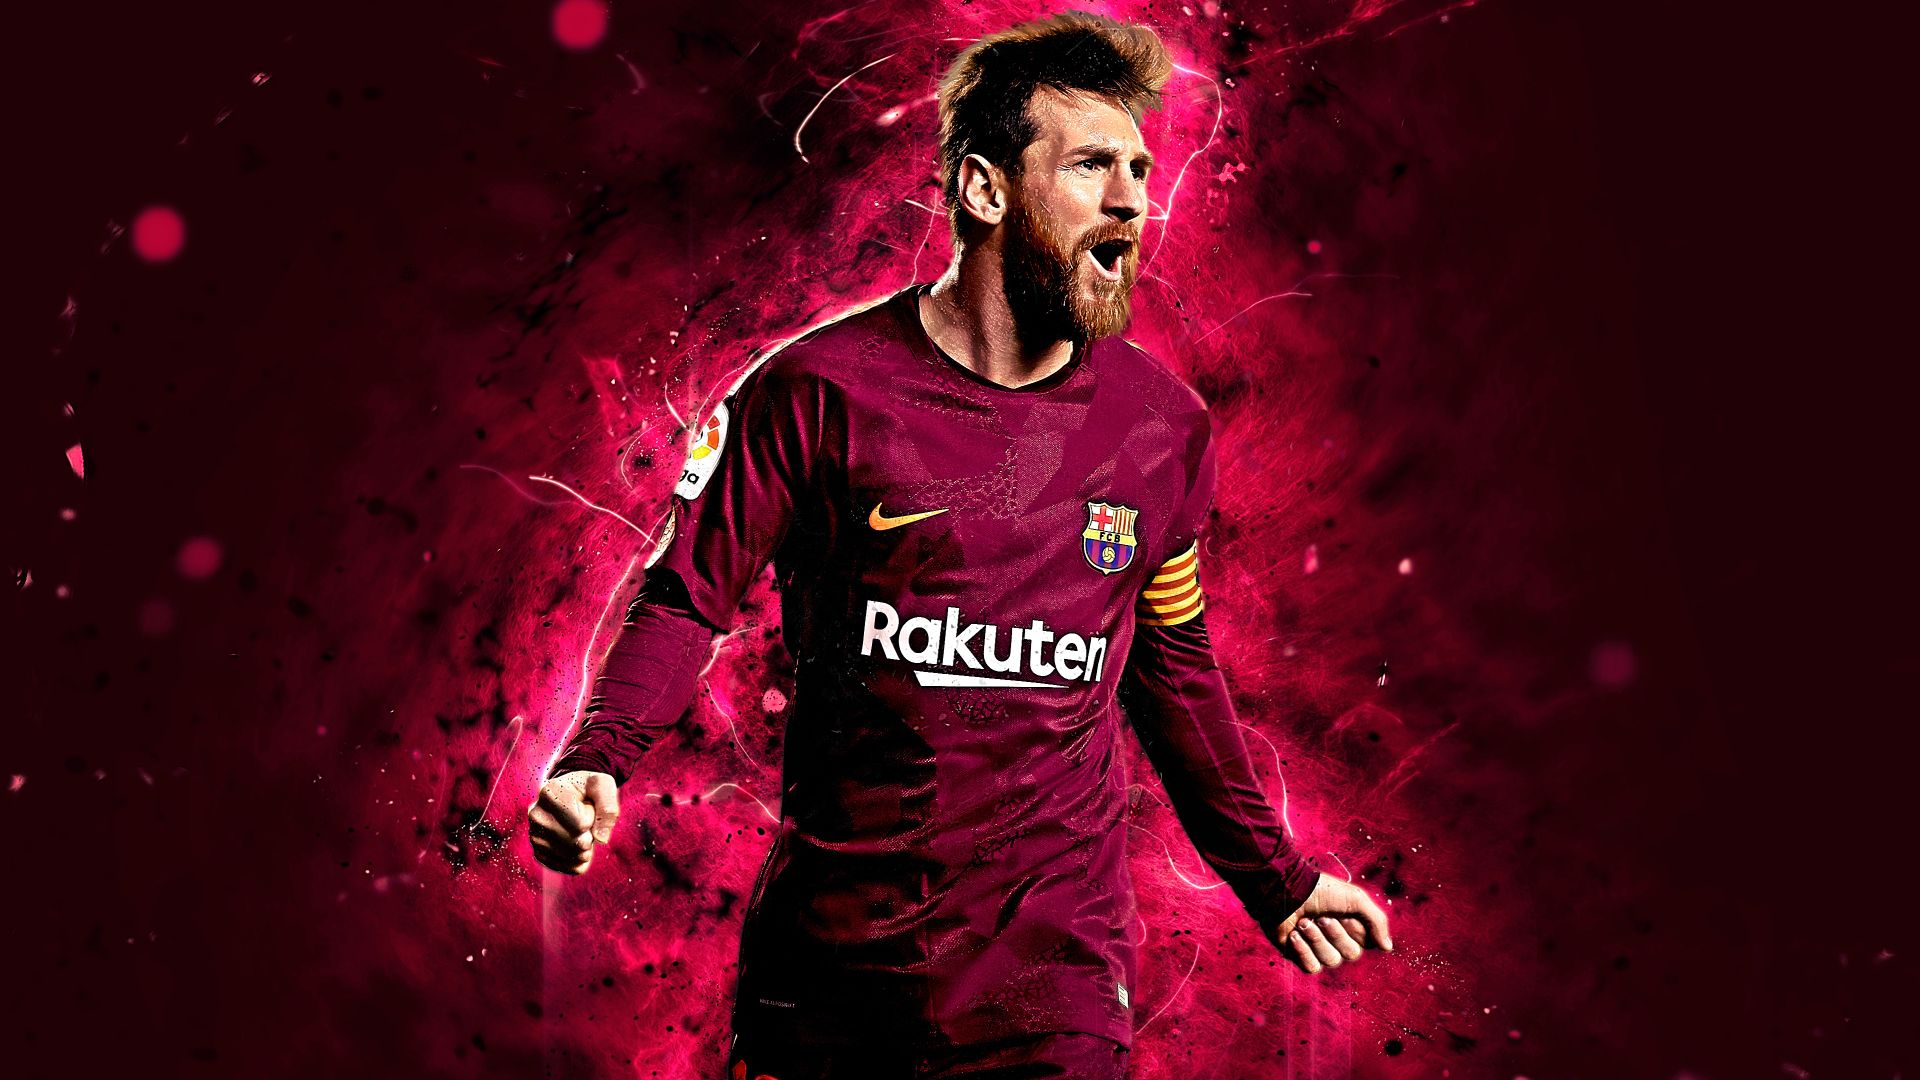 Hãy tải ngay hình nền Messi cho điện thoại của bạn để được ngắm nhìn ngôi sao bóng đá hàng đầu thế giới liên tục trong một ngày dài!